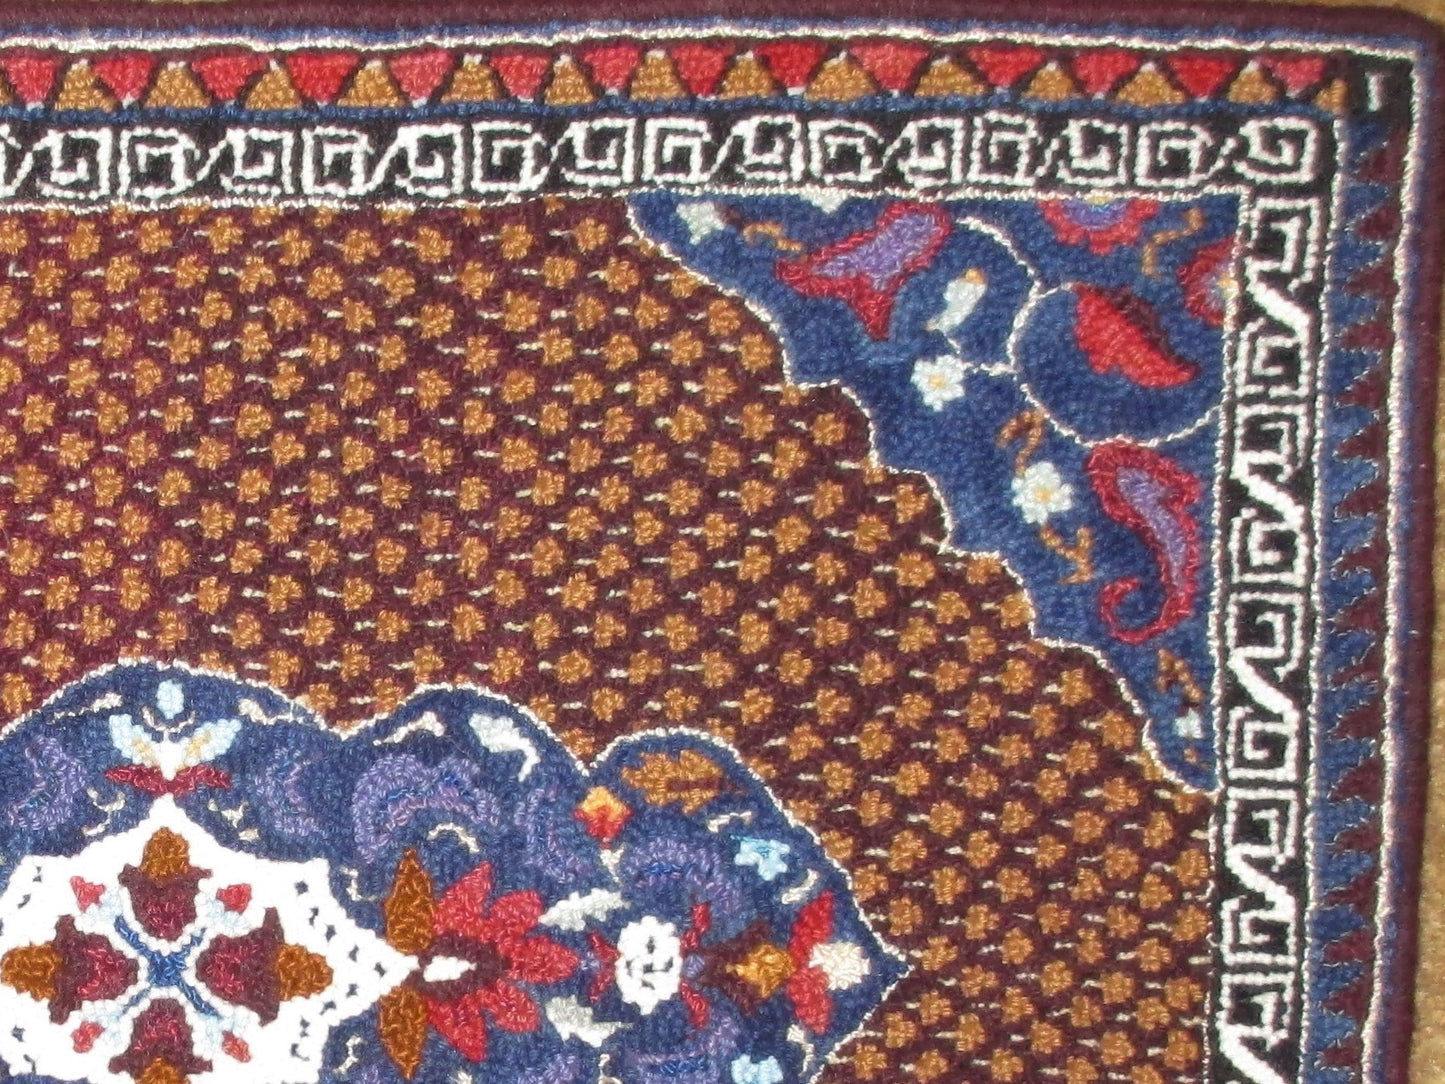 Magic Carpet Rug, 35"x26"